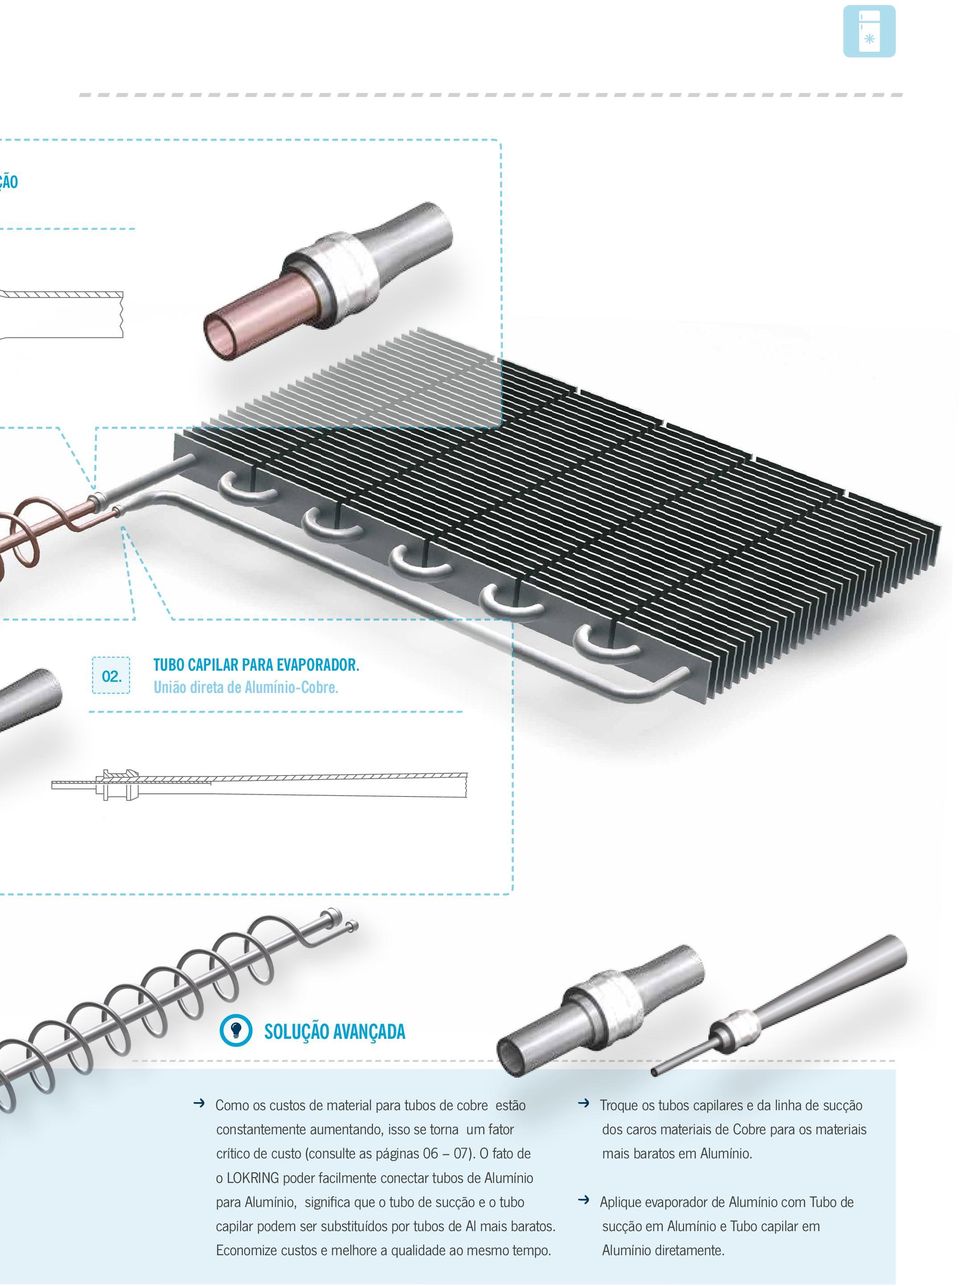 O fato de o LOKRING poder facilmente conectar tubos de Alumínio para Alumínio, significa que o tubo de sucção e o tubo capilar podem ser substituídos por tubos de Al mais